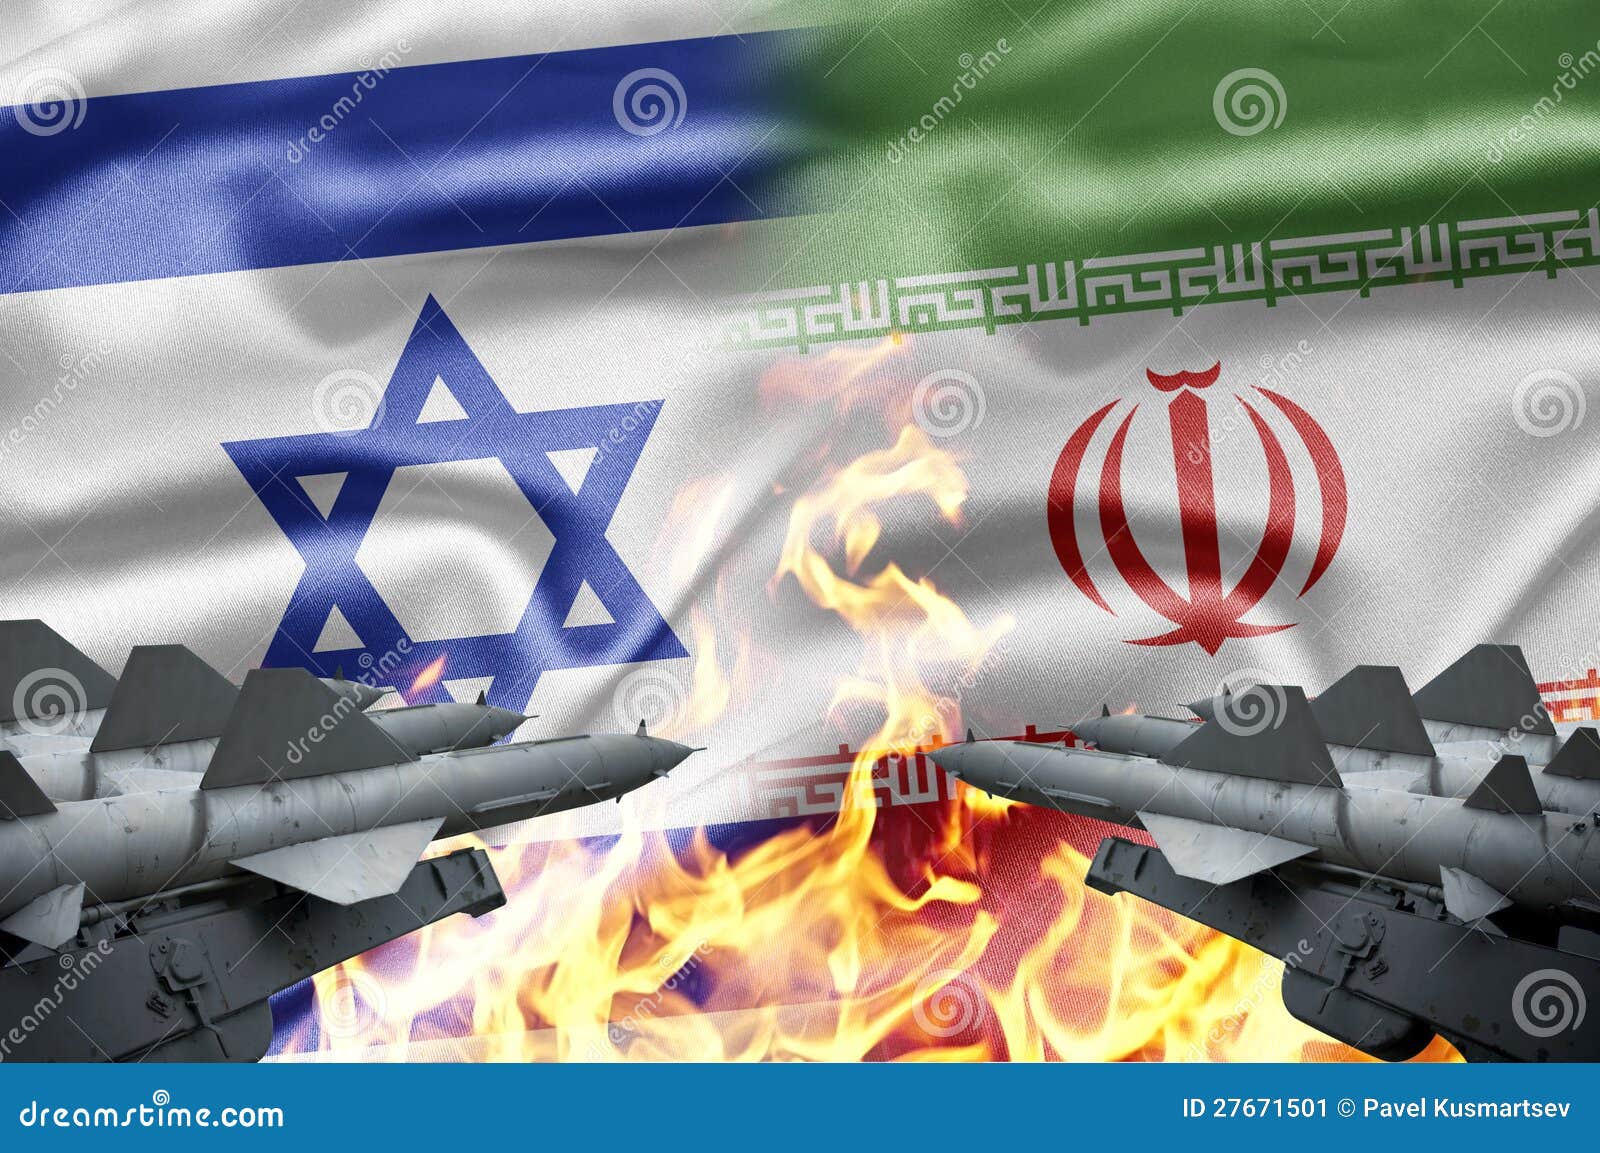 伊朗举行大规模联合军演 “随时抵御”美国和以色列|伊朗|伊核协议|以色列_新浪军事_新浪网